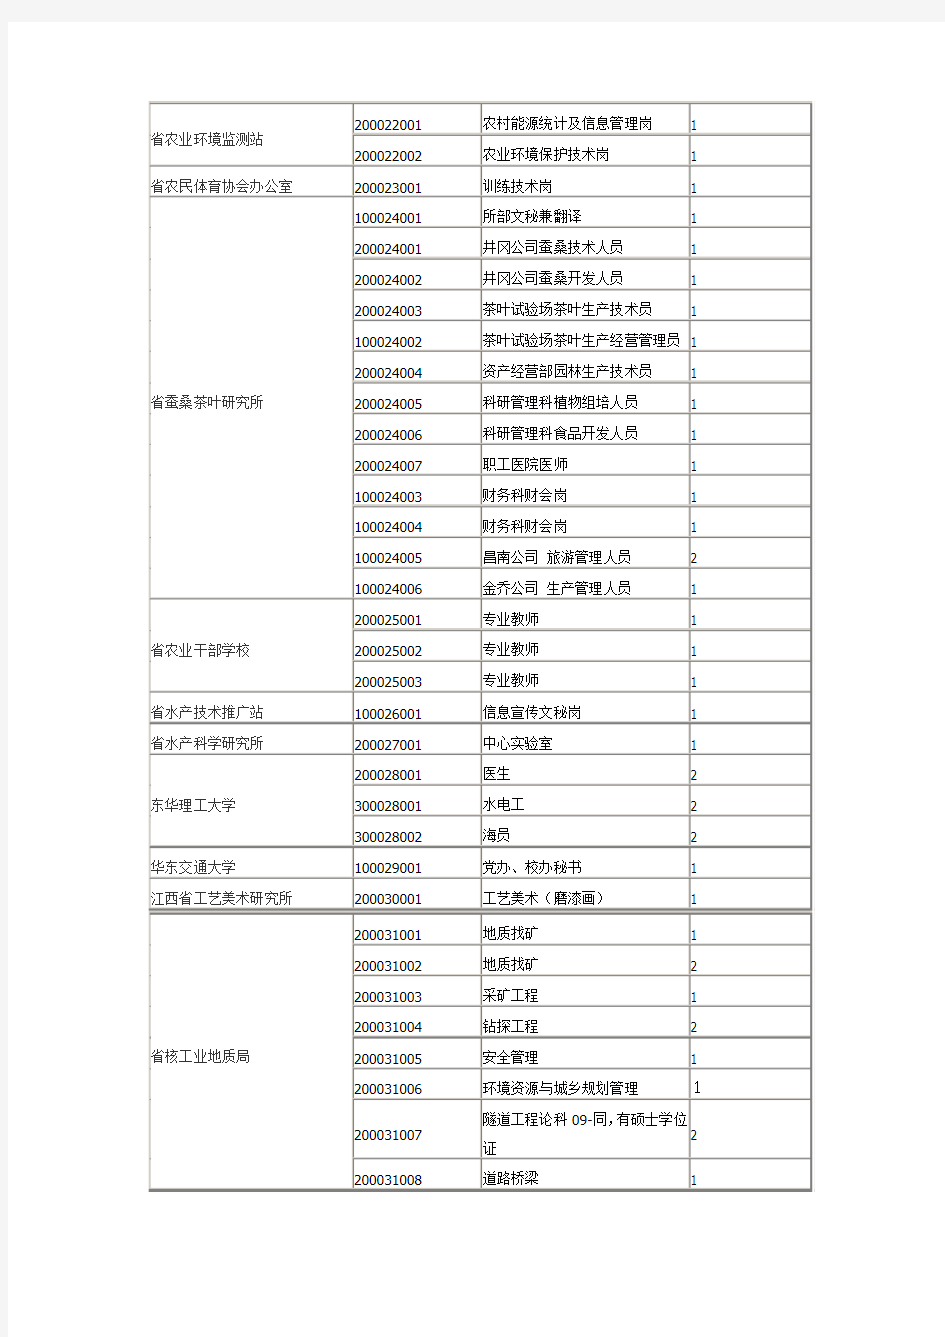 江西省2010年下半年省直事业单位招聘岗位信息目录(一)(达阅)